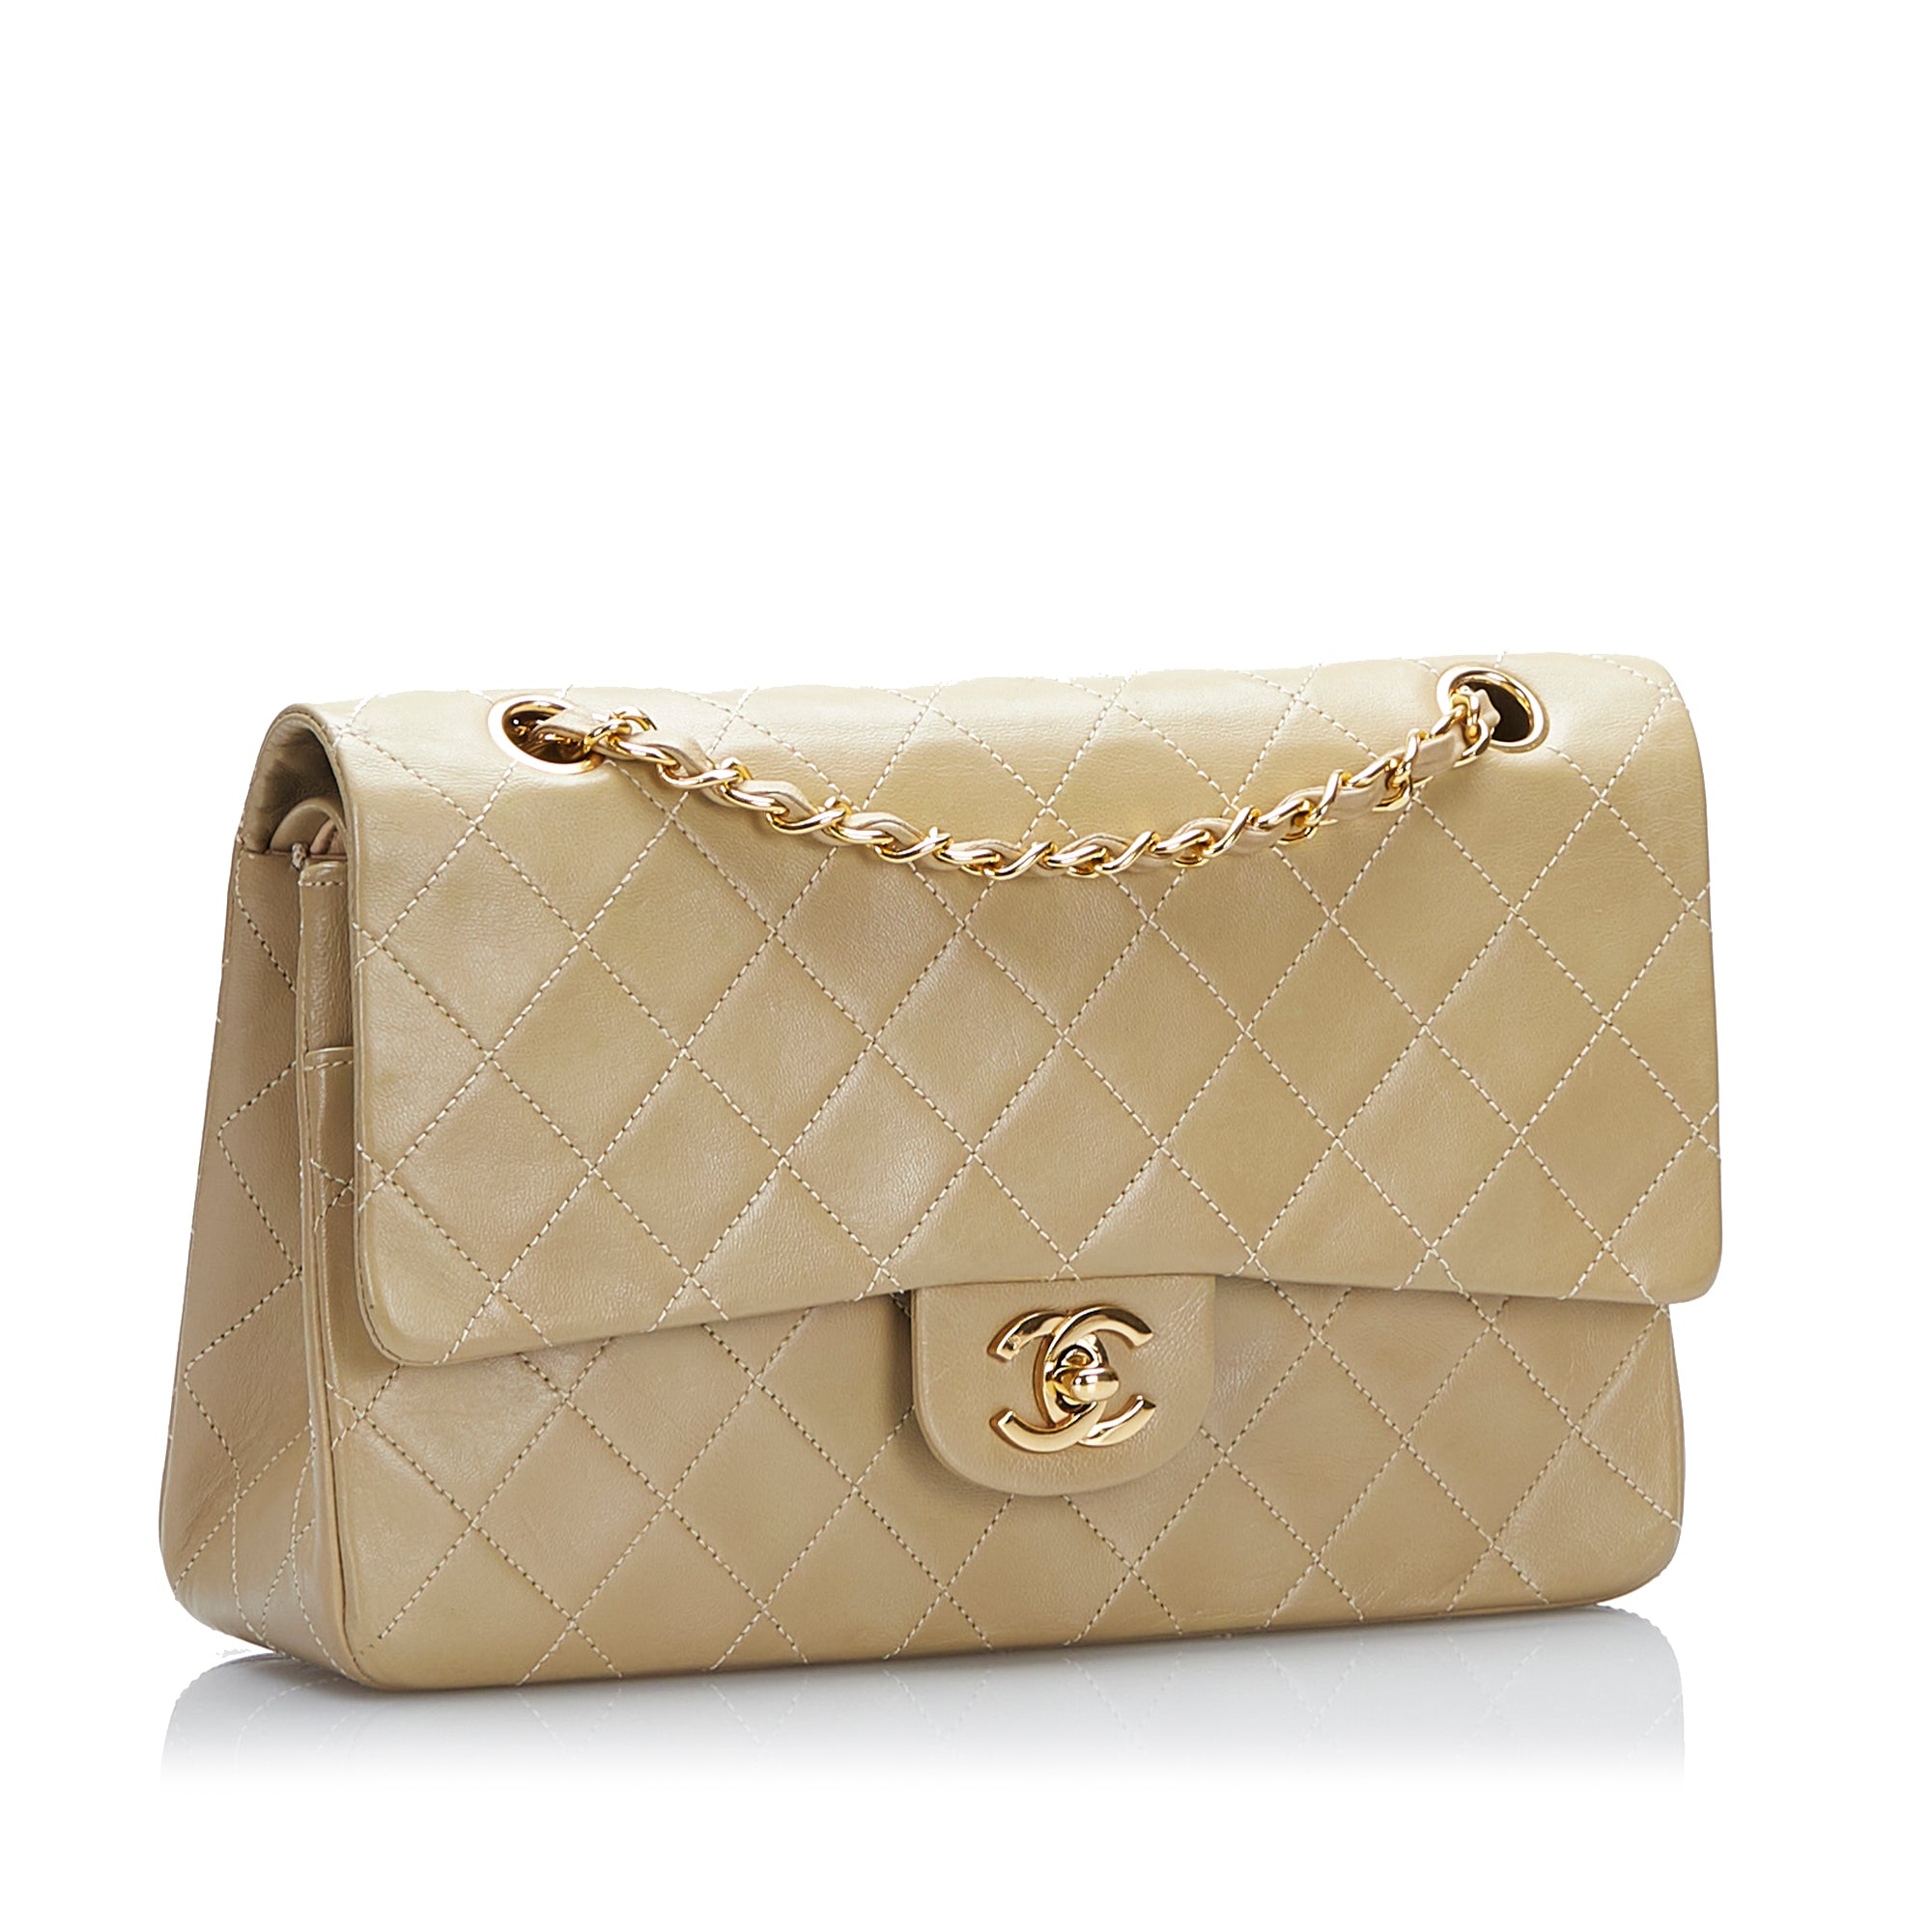 Chanel Medium Classic Double Flap Beige Shoulder Bag